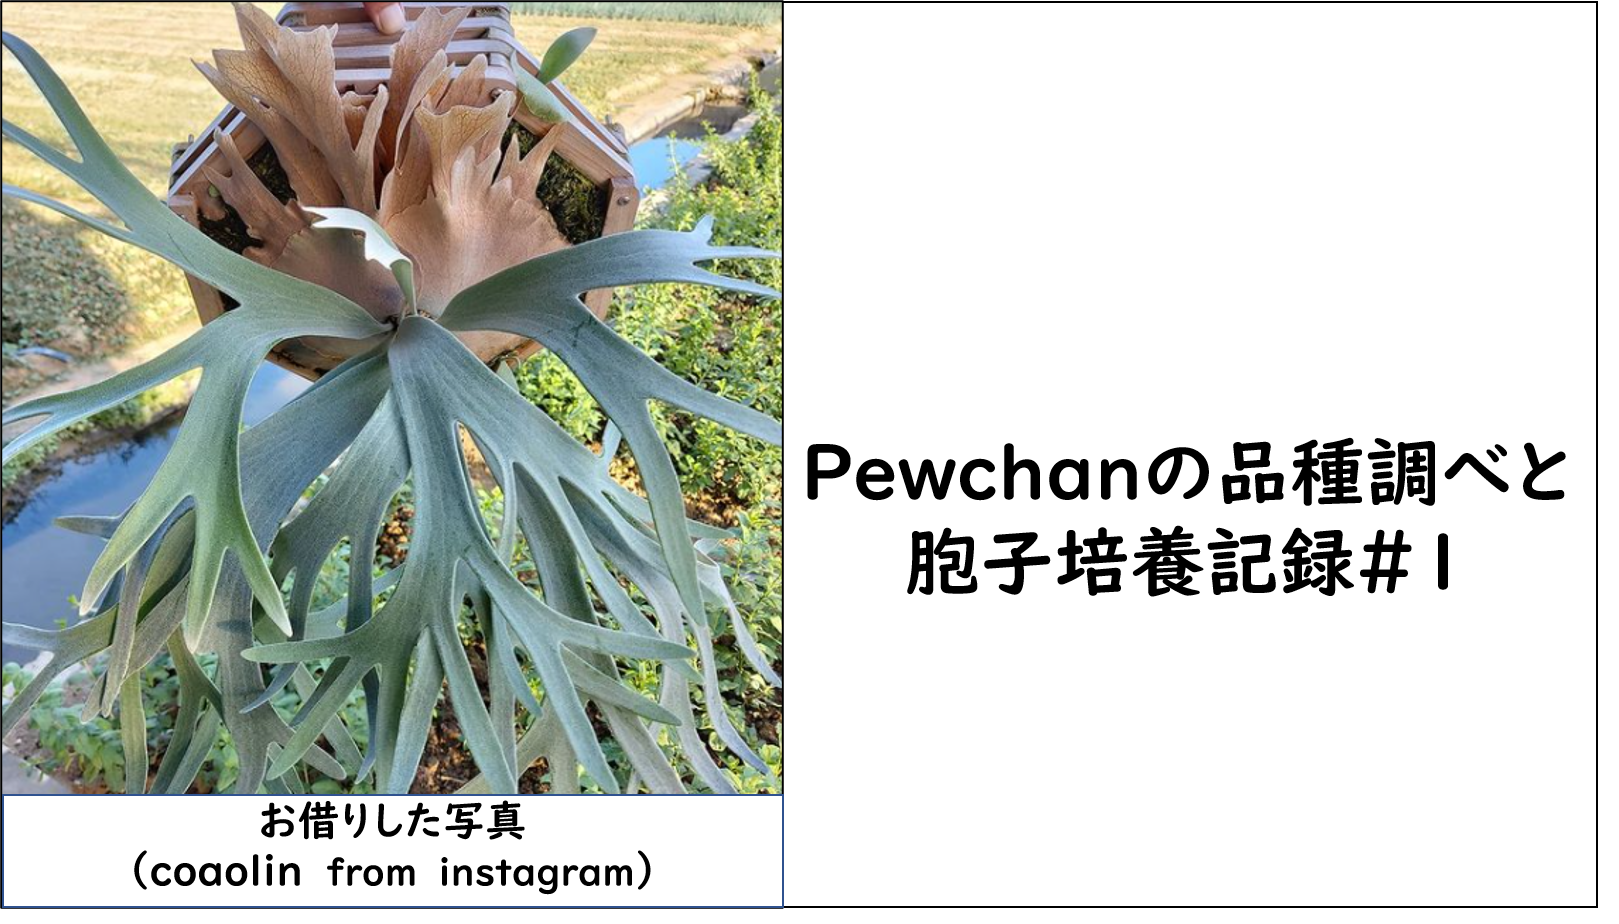 ビカクシダ・ピューチャン（P.pewchan）の品種調べと胞子培養【2021.9 